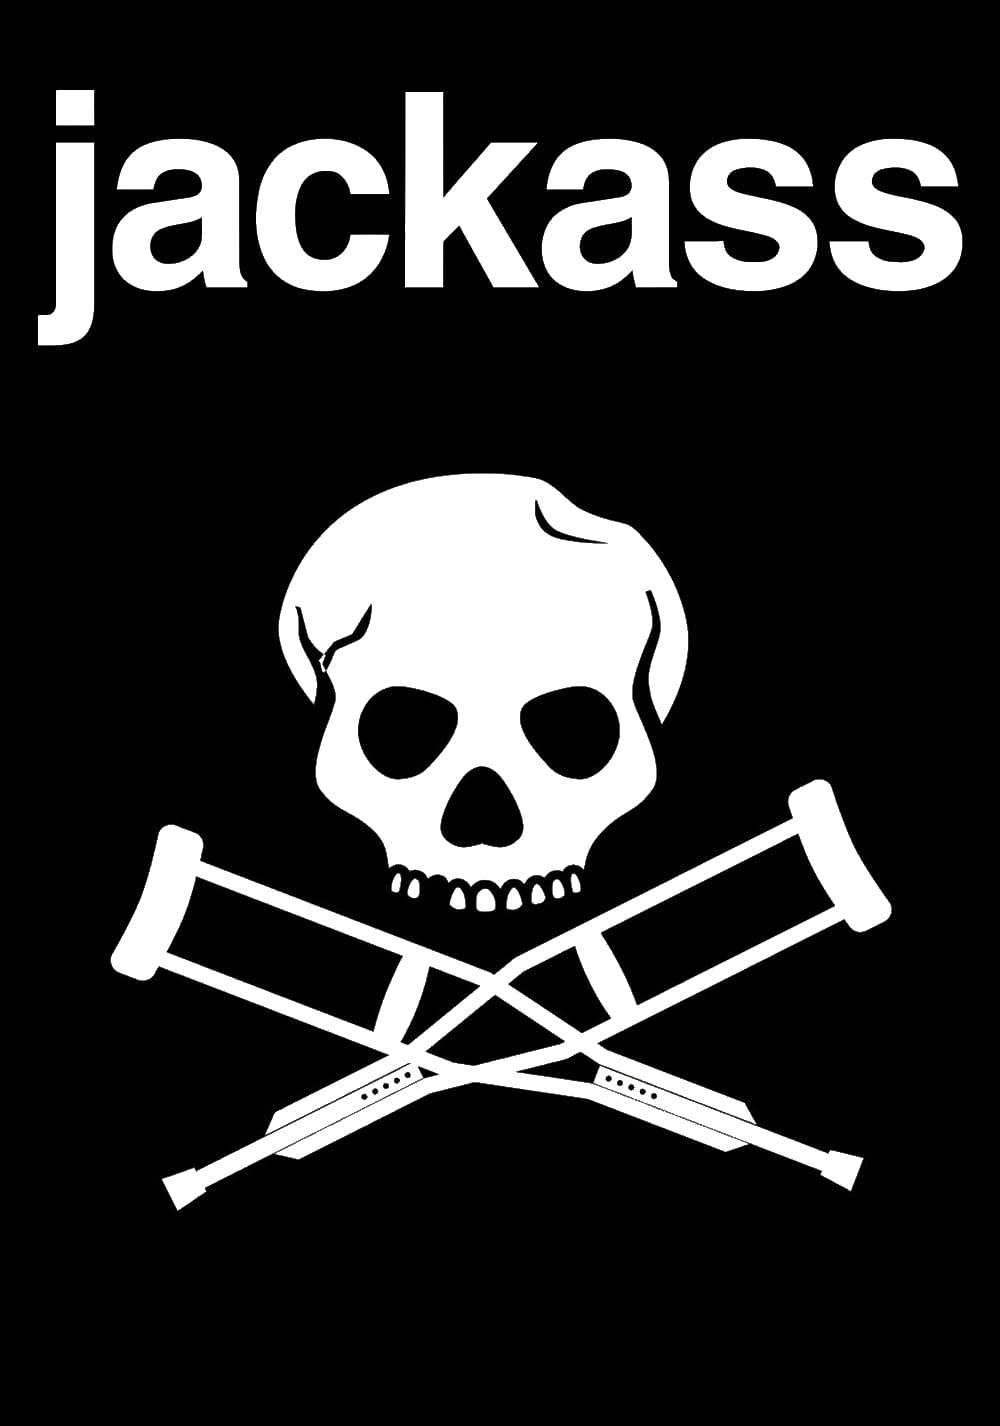 Jackass poster